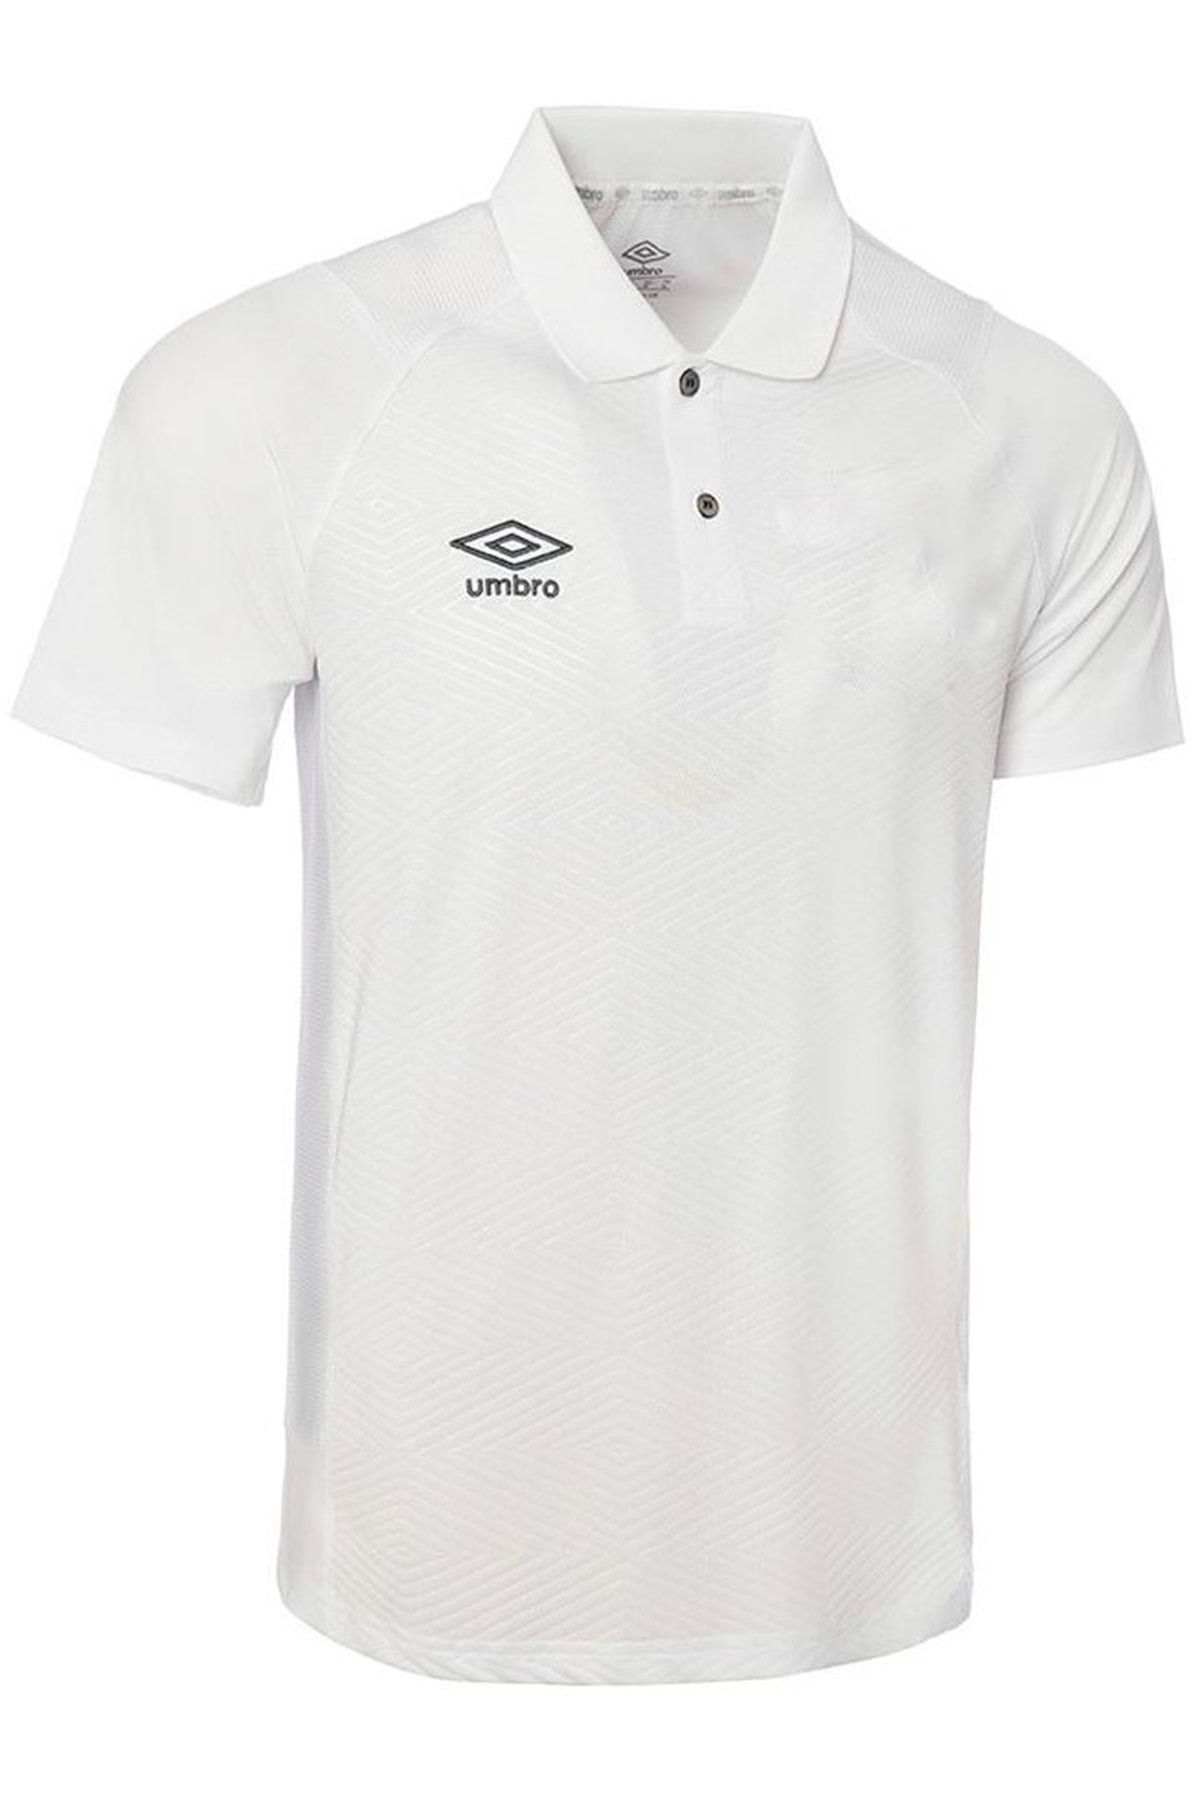 Umbro Tf-0168 Kısa Kol Polo Yaka T-shirt Erkek Tişört Beyaz